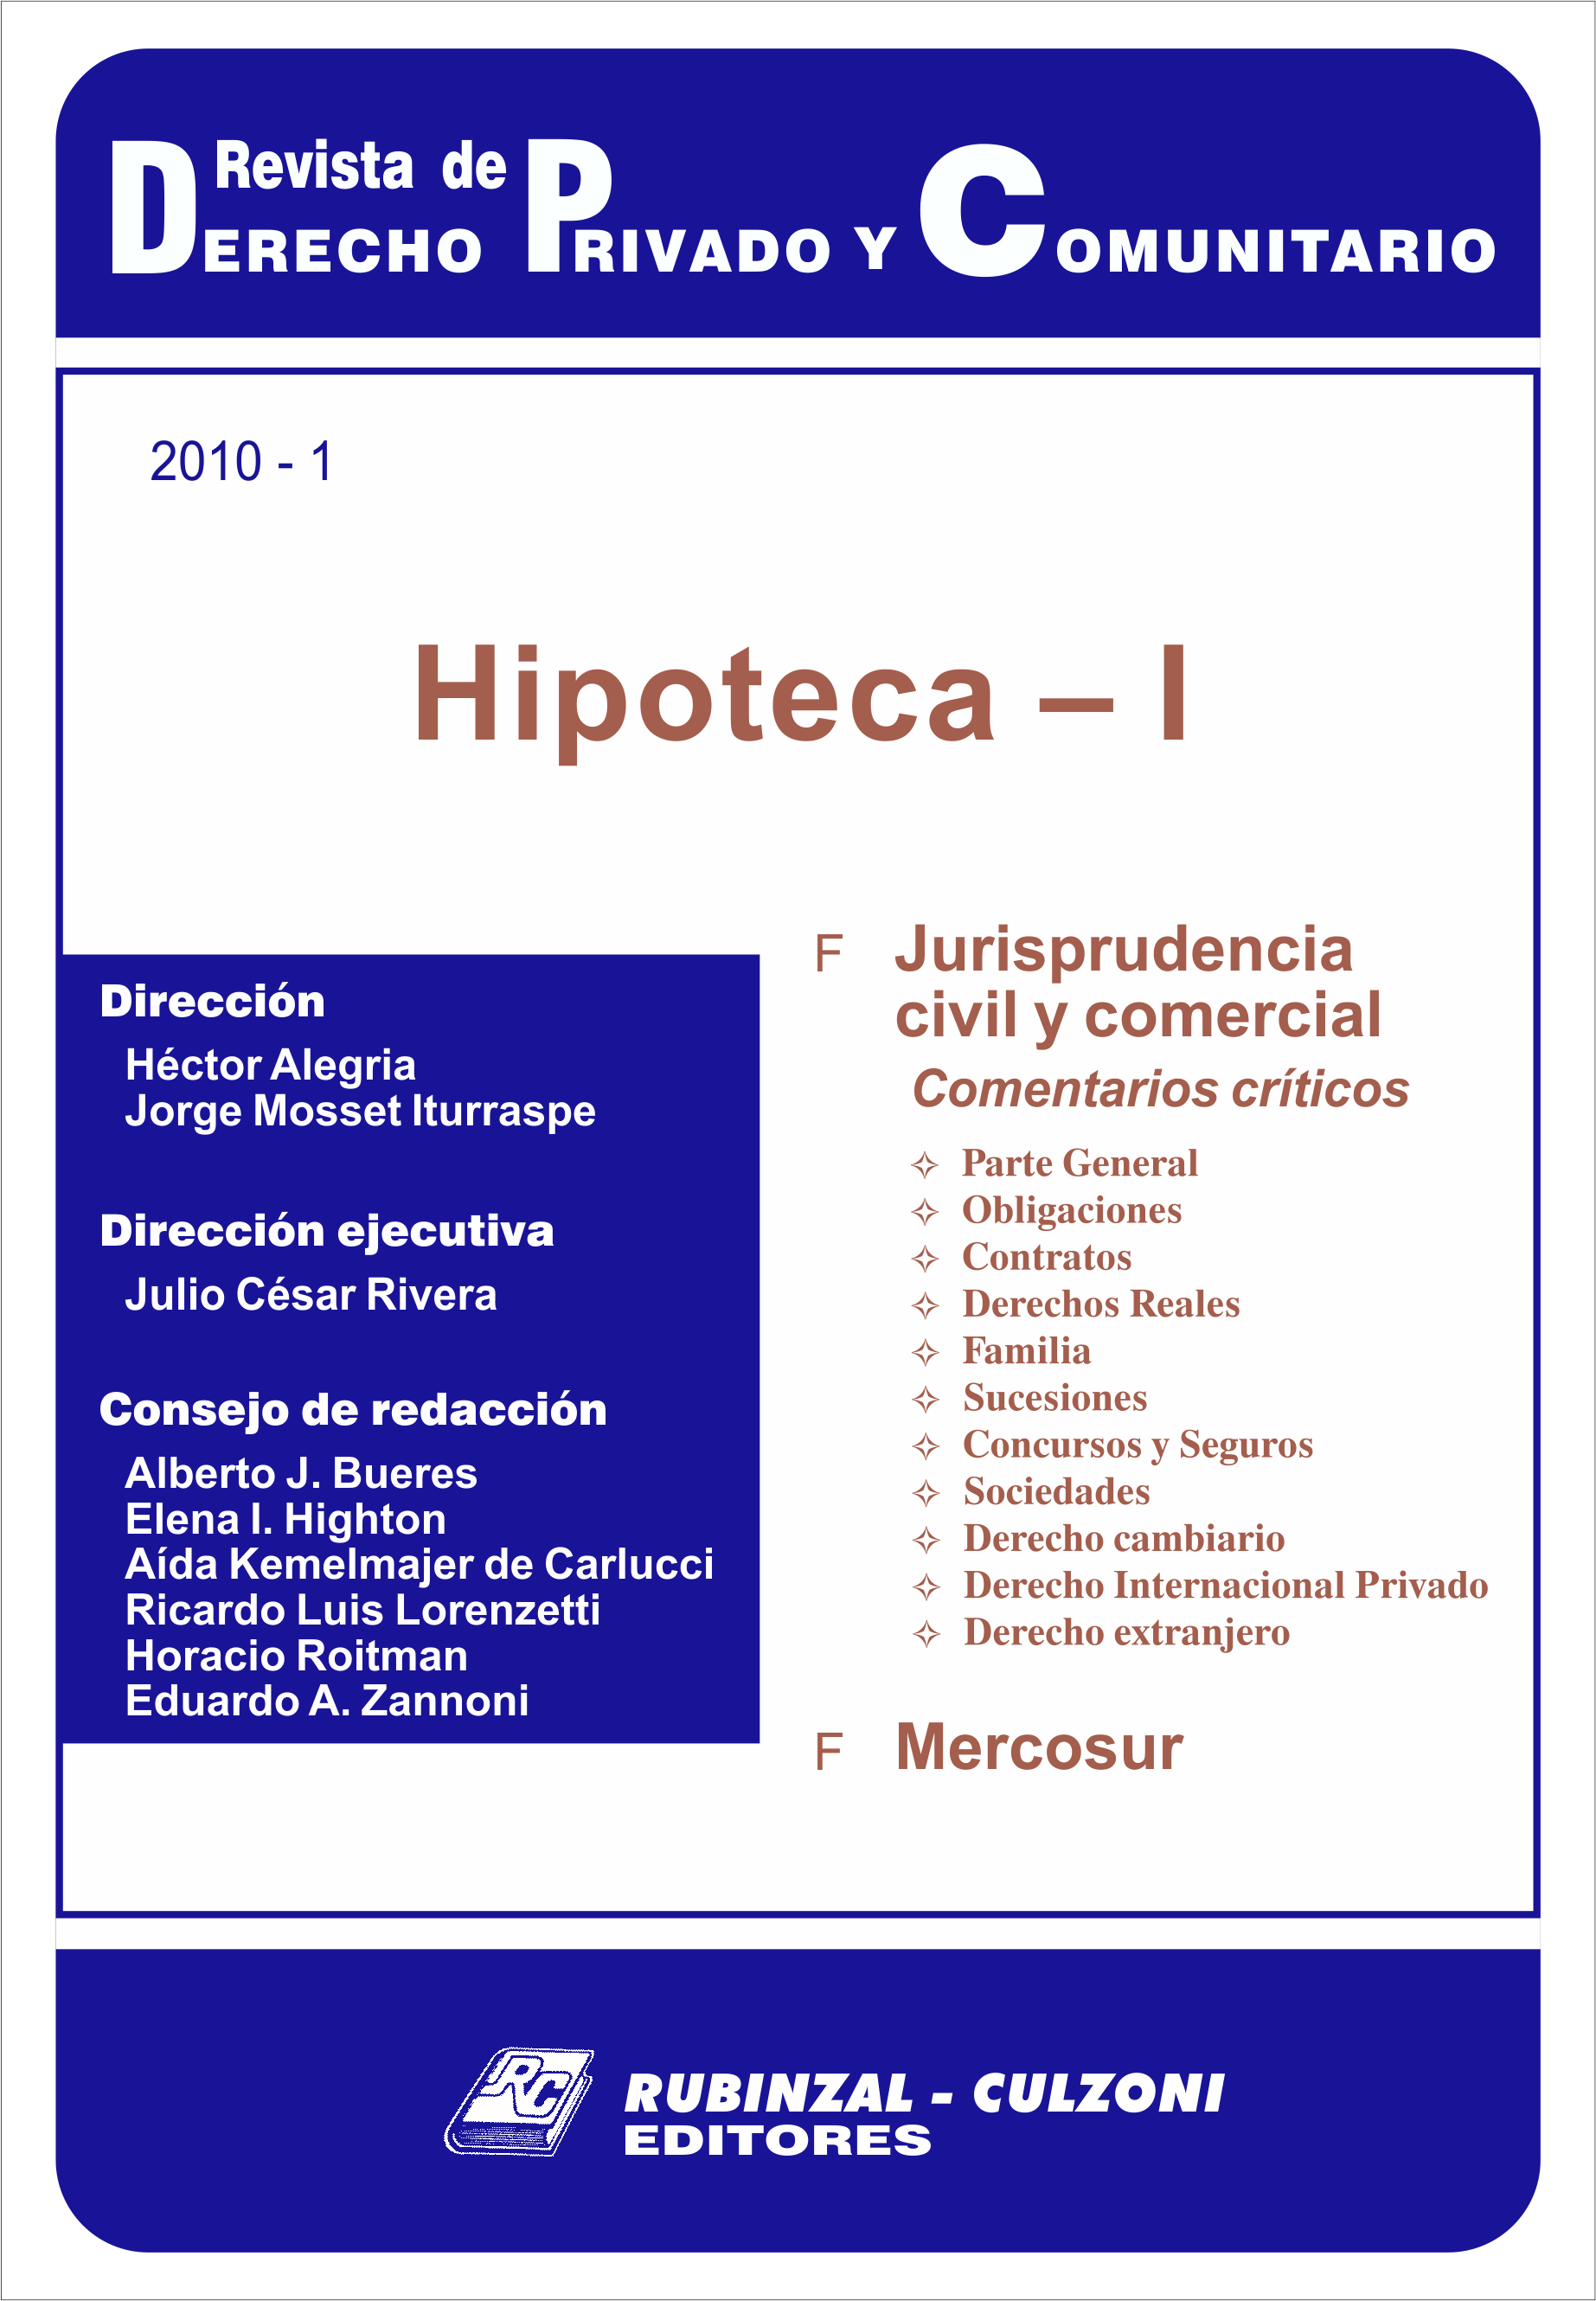 Revista de Derecho Privado y Comunitario - Hipoteca - I.